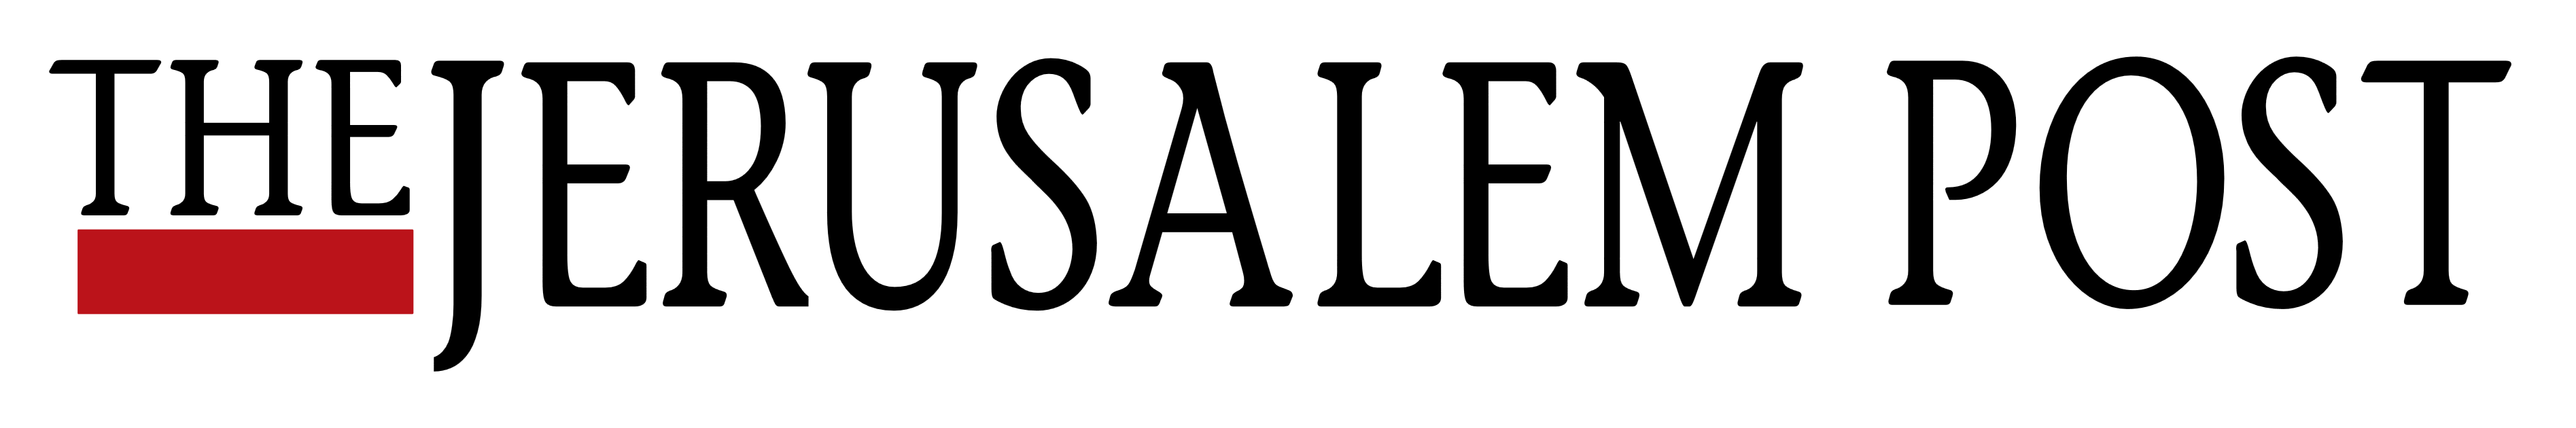 The Jerusalem Post logo, logotype